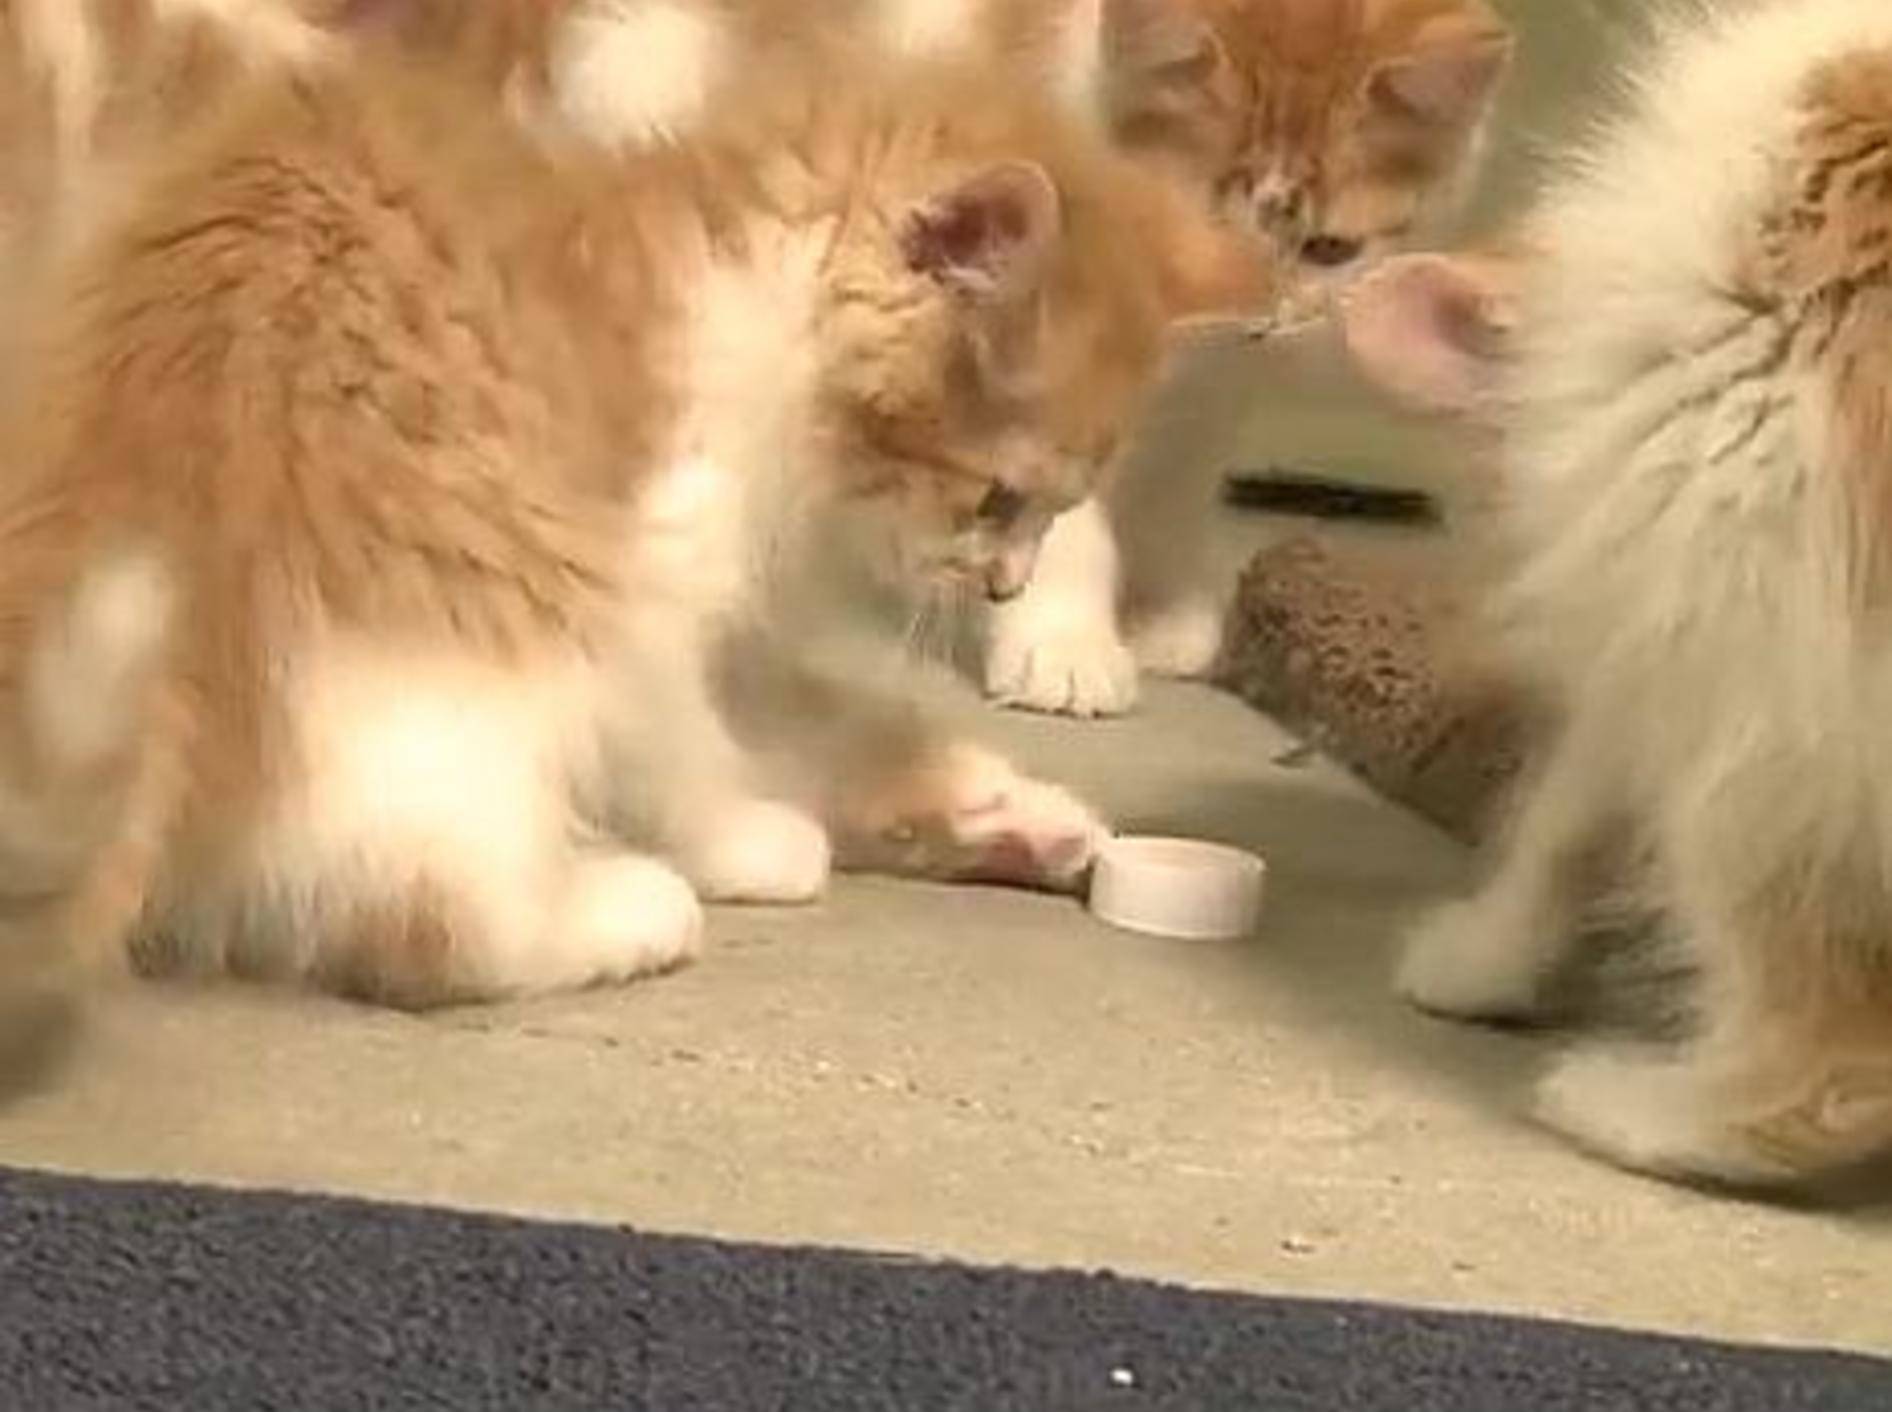 Kleines Flaschendeckel-Duell unter Katzen – Bild: Youtube / The Pet Collective